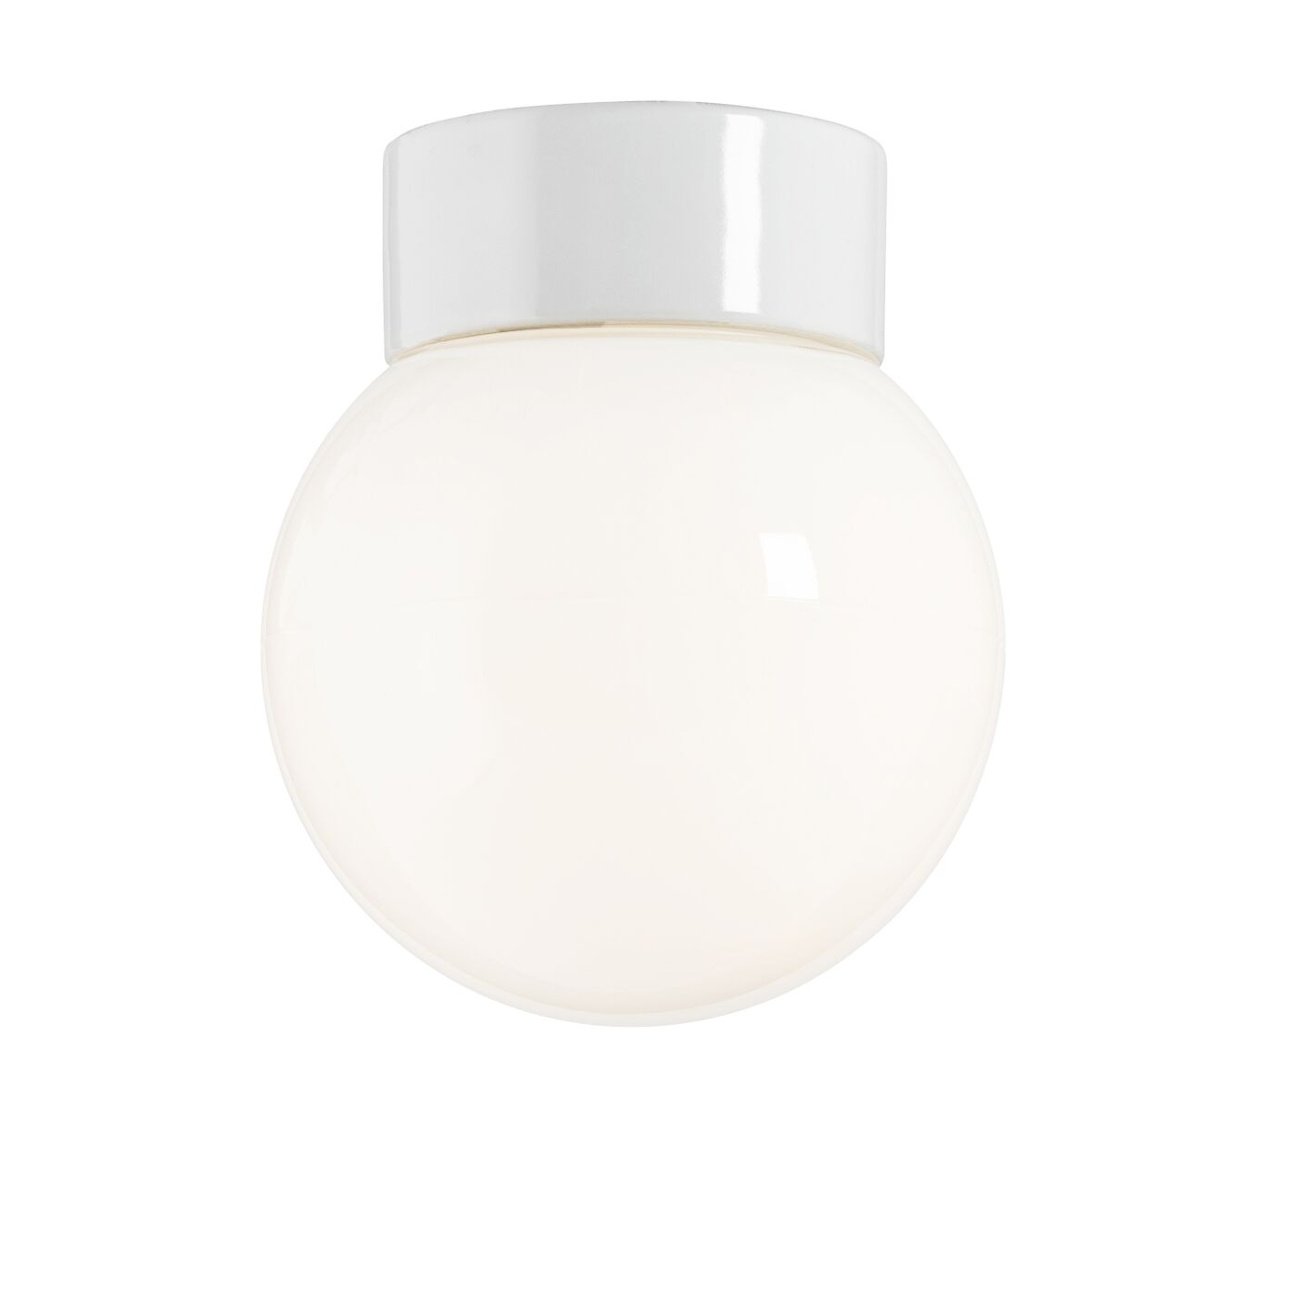 Badlampe mit weißem Kugelglas